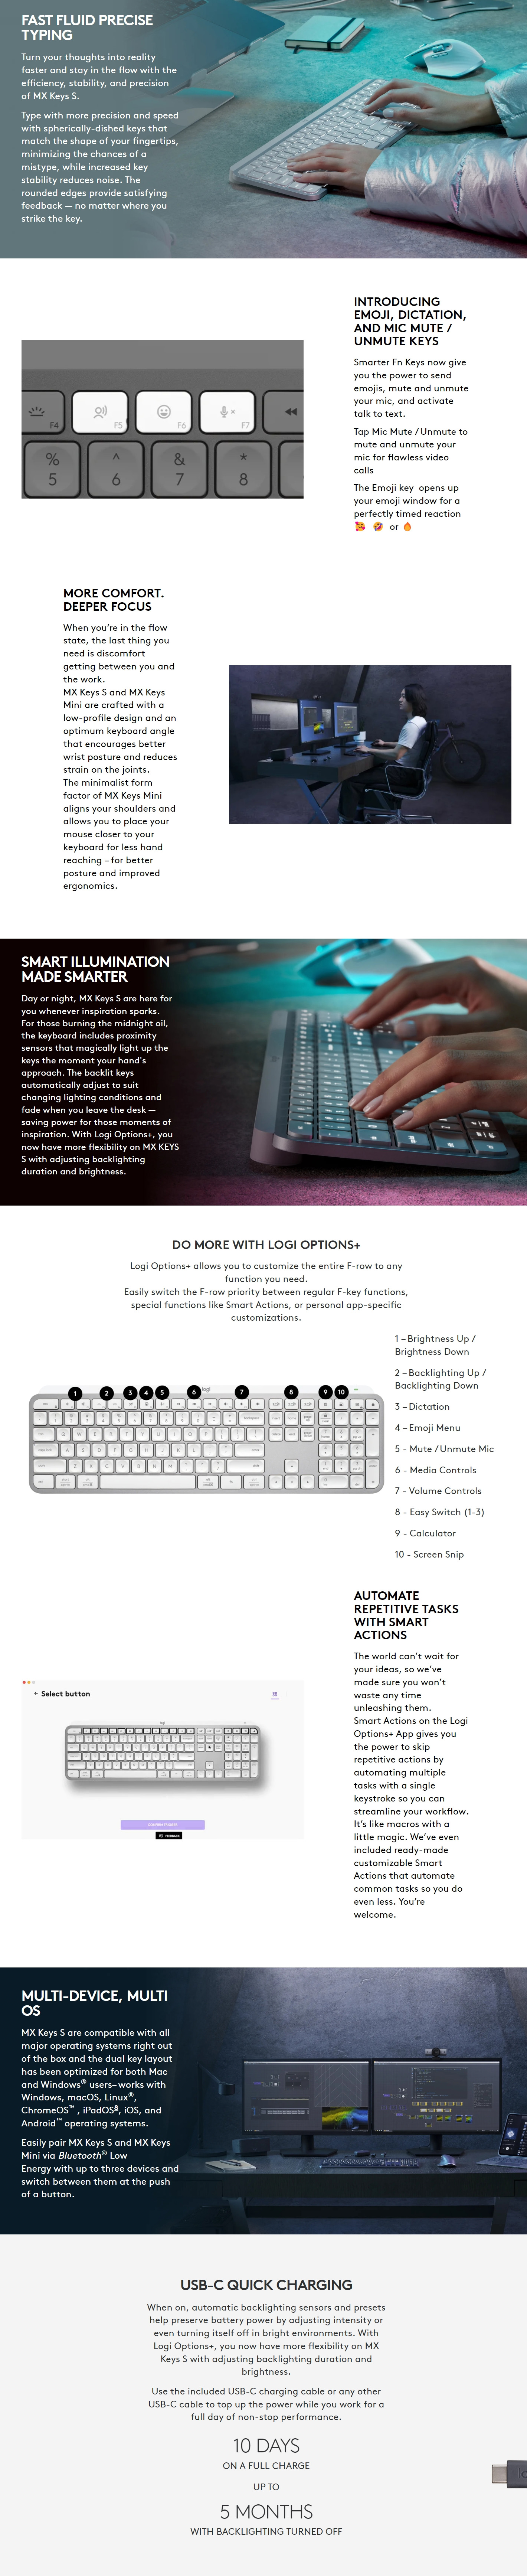 Keyboards-Logitech-MX-Keys-S-Advanced-Wireless-Illuminated-Keyboard-Graphite-920-011563-11